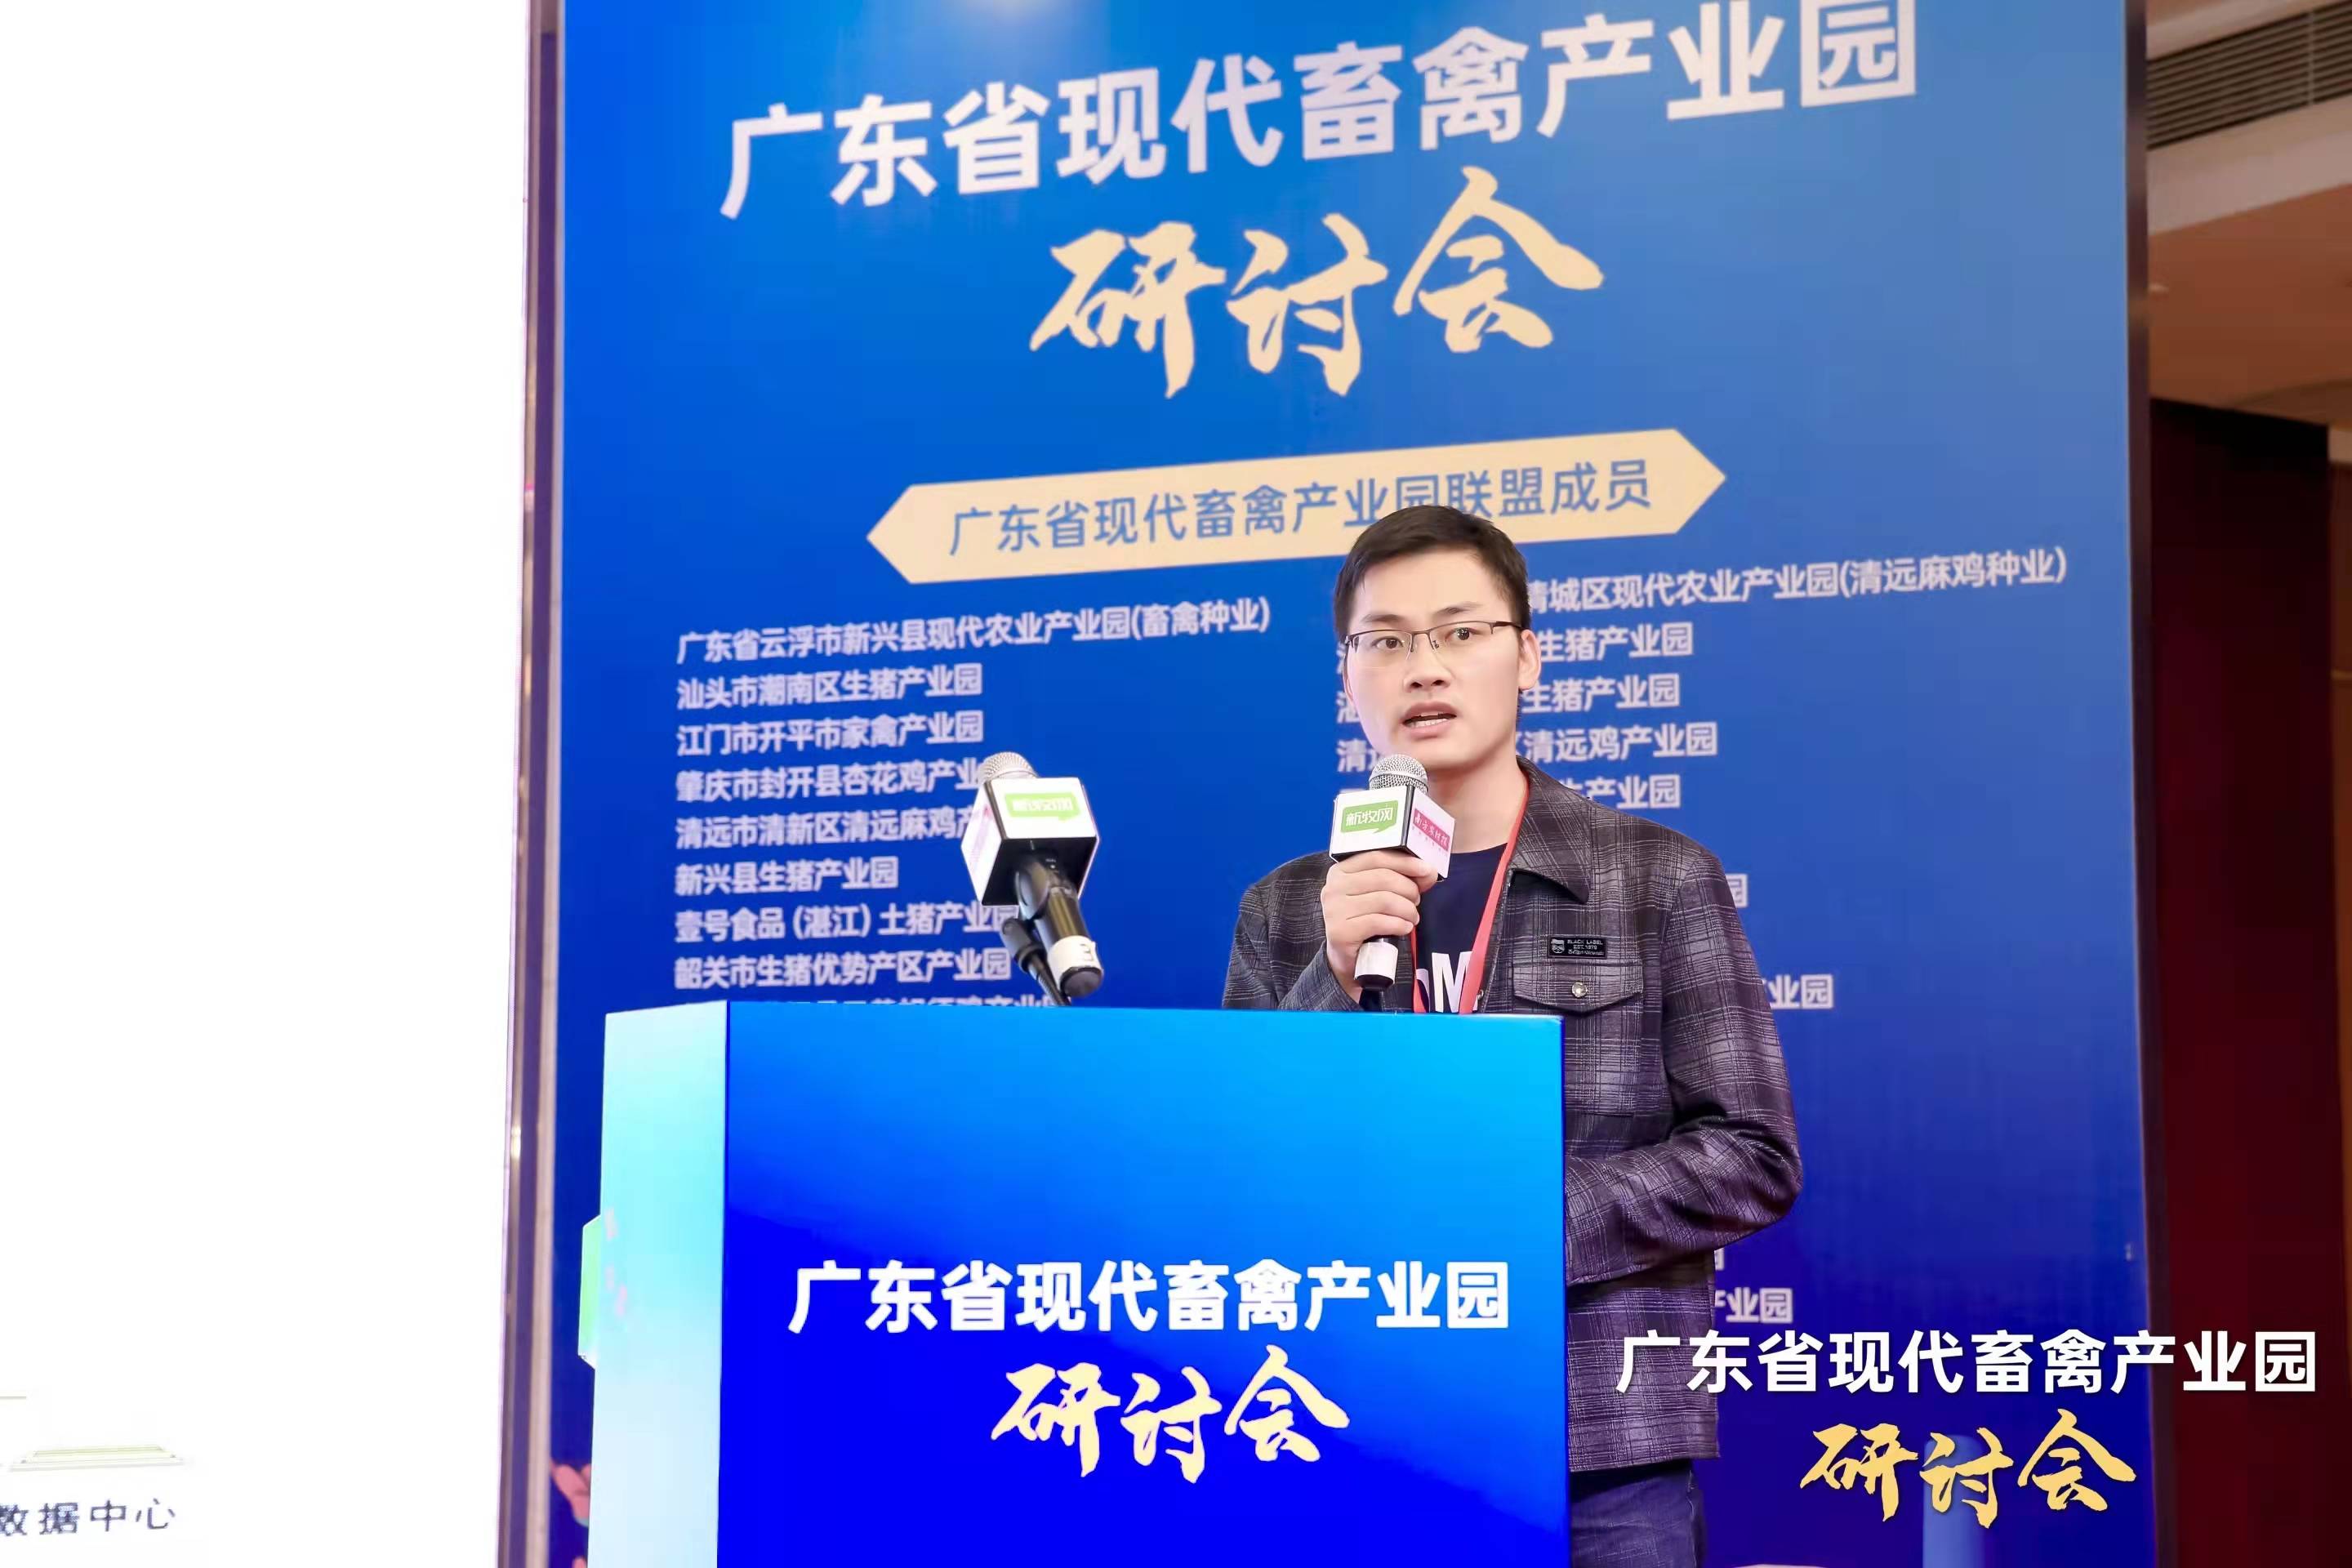 广东谷越科技有限公司技术总监李瑶介绍广州市从化区生猪产业园